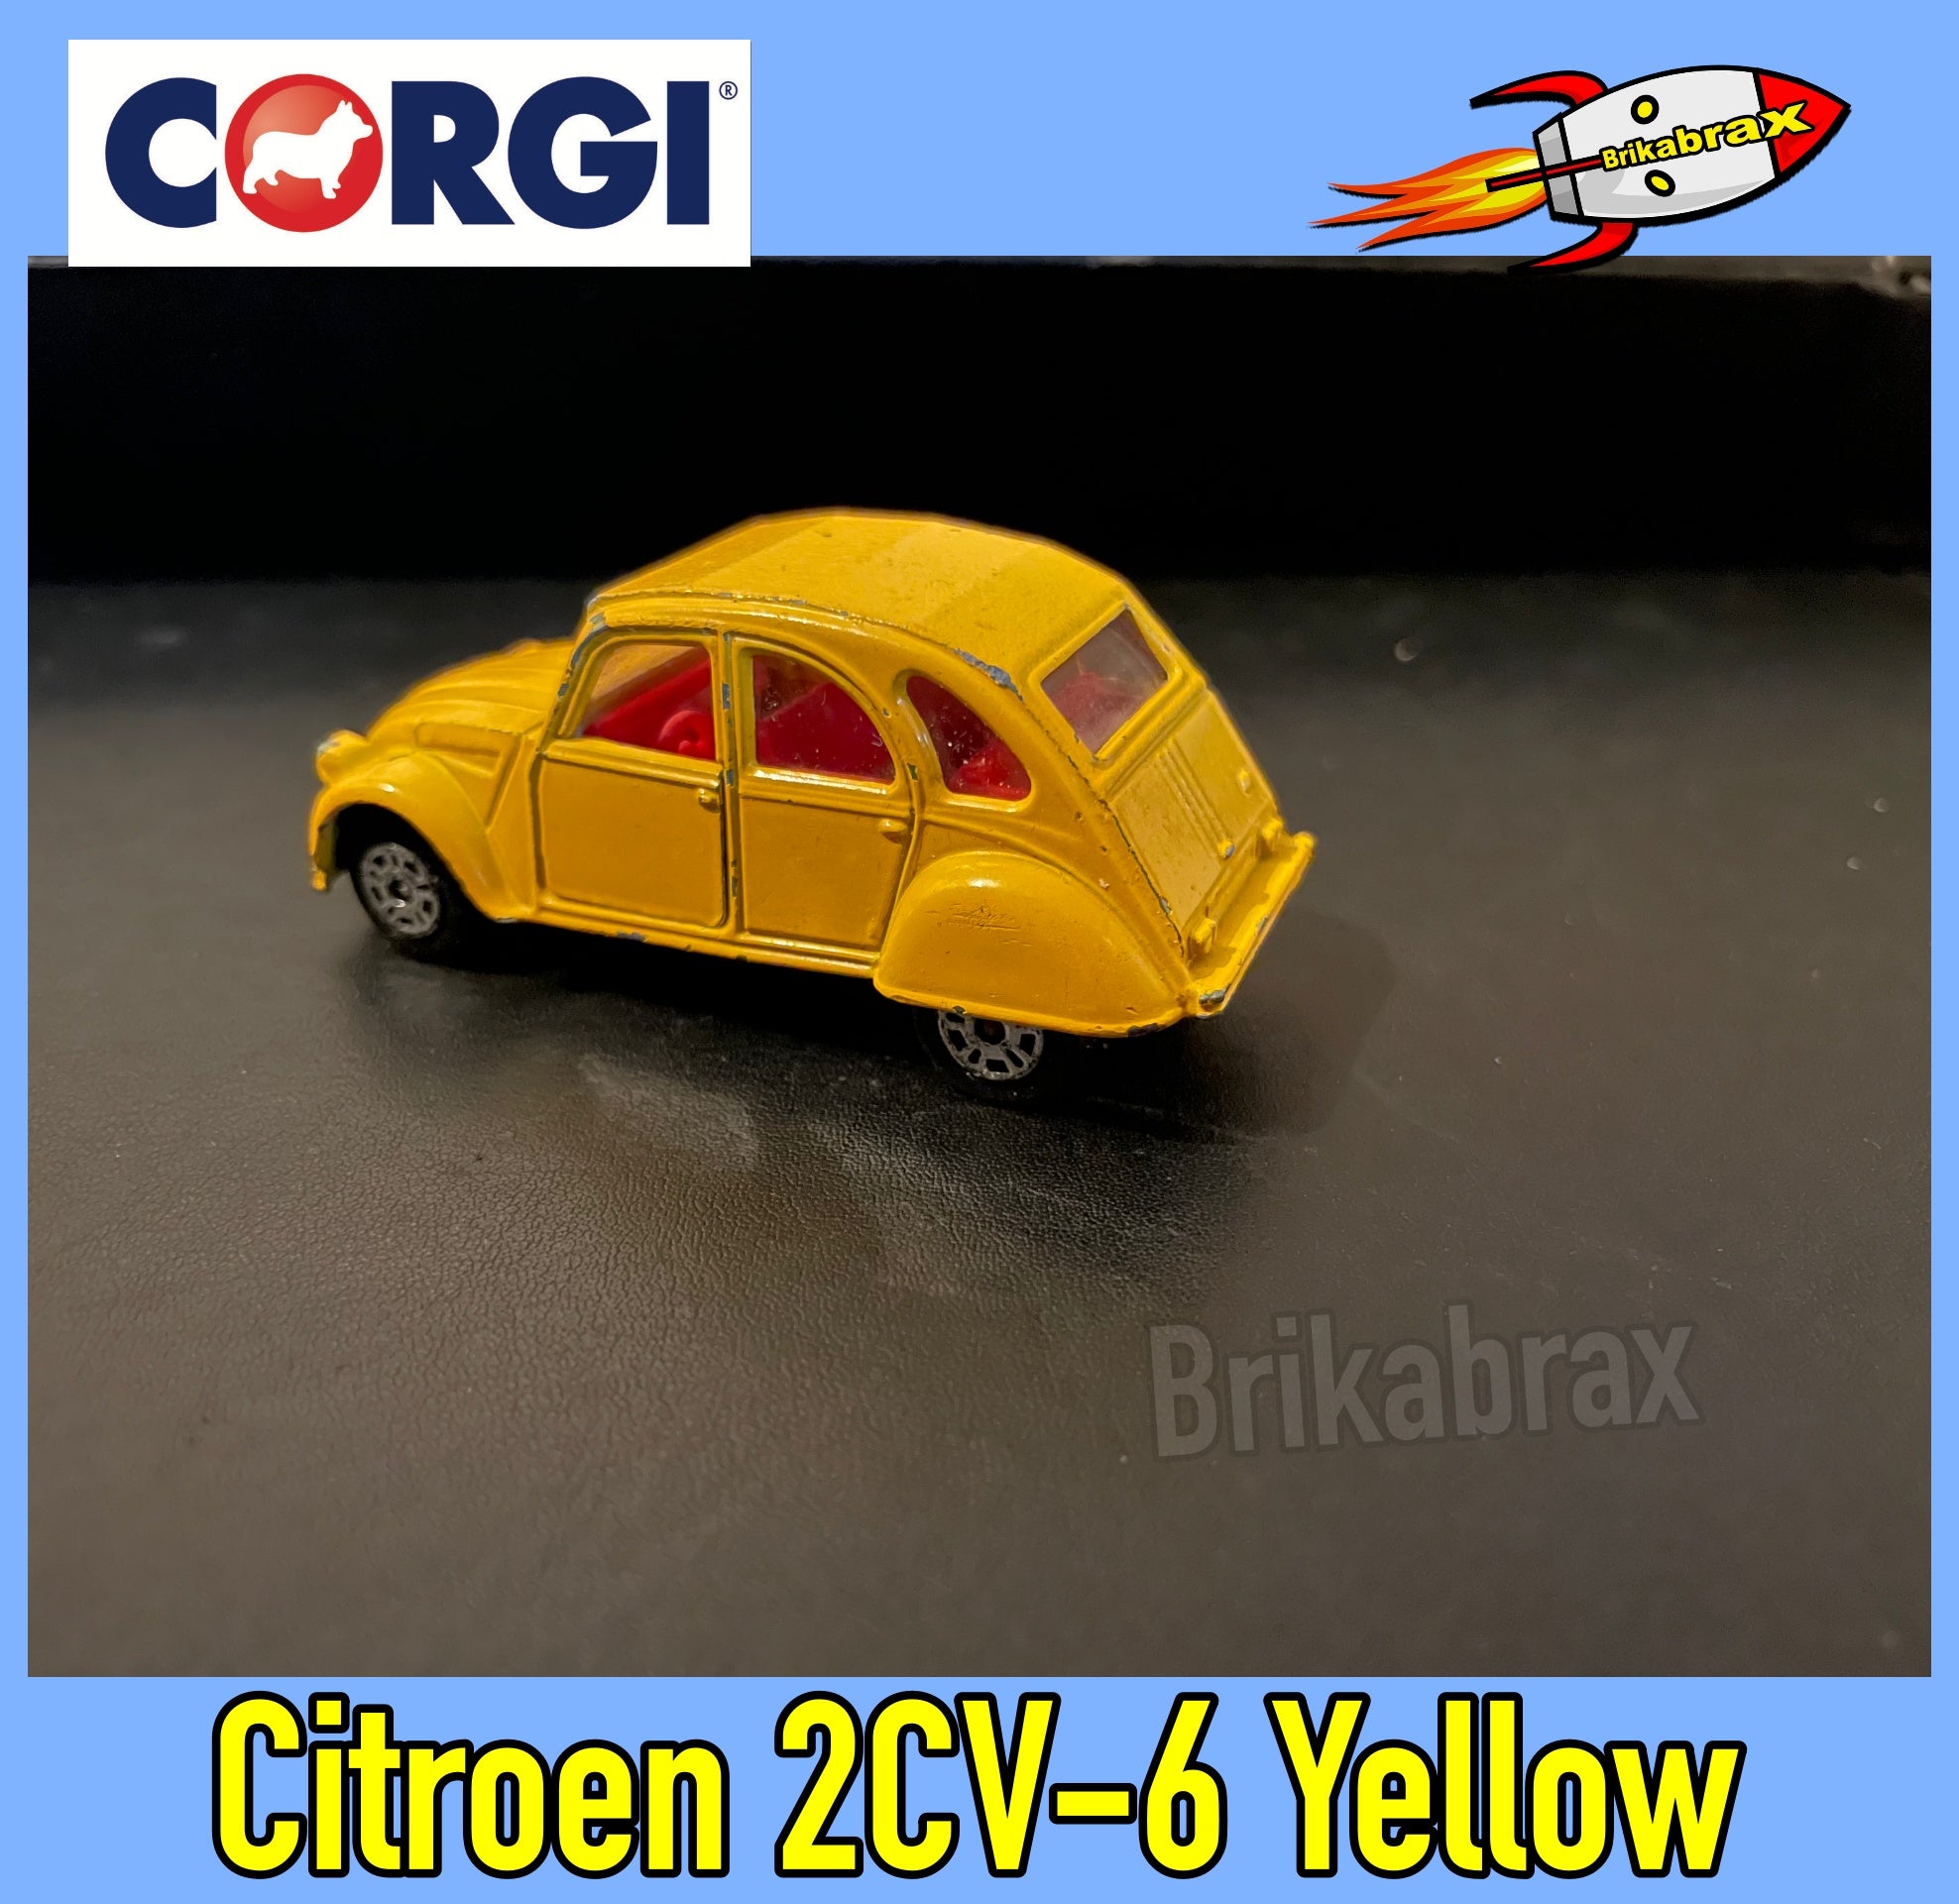 Corgi Toy Car: Citroen 2CV-6 Yellow